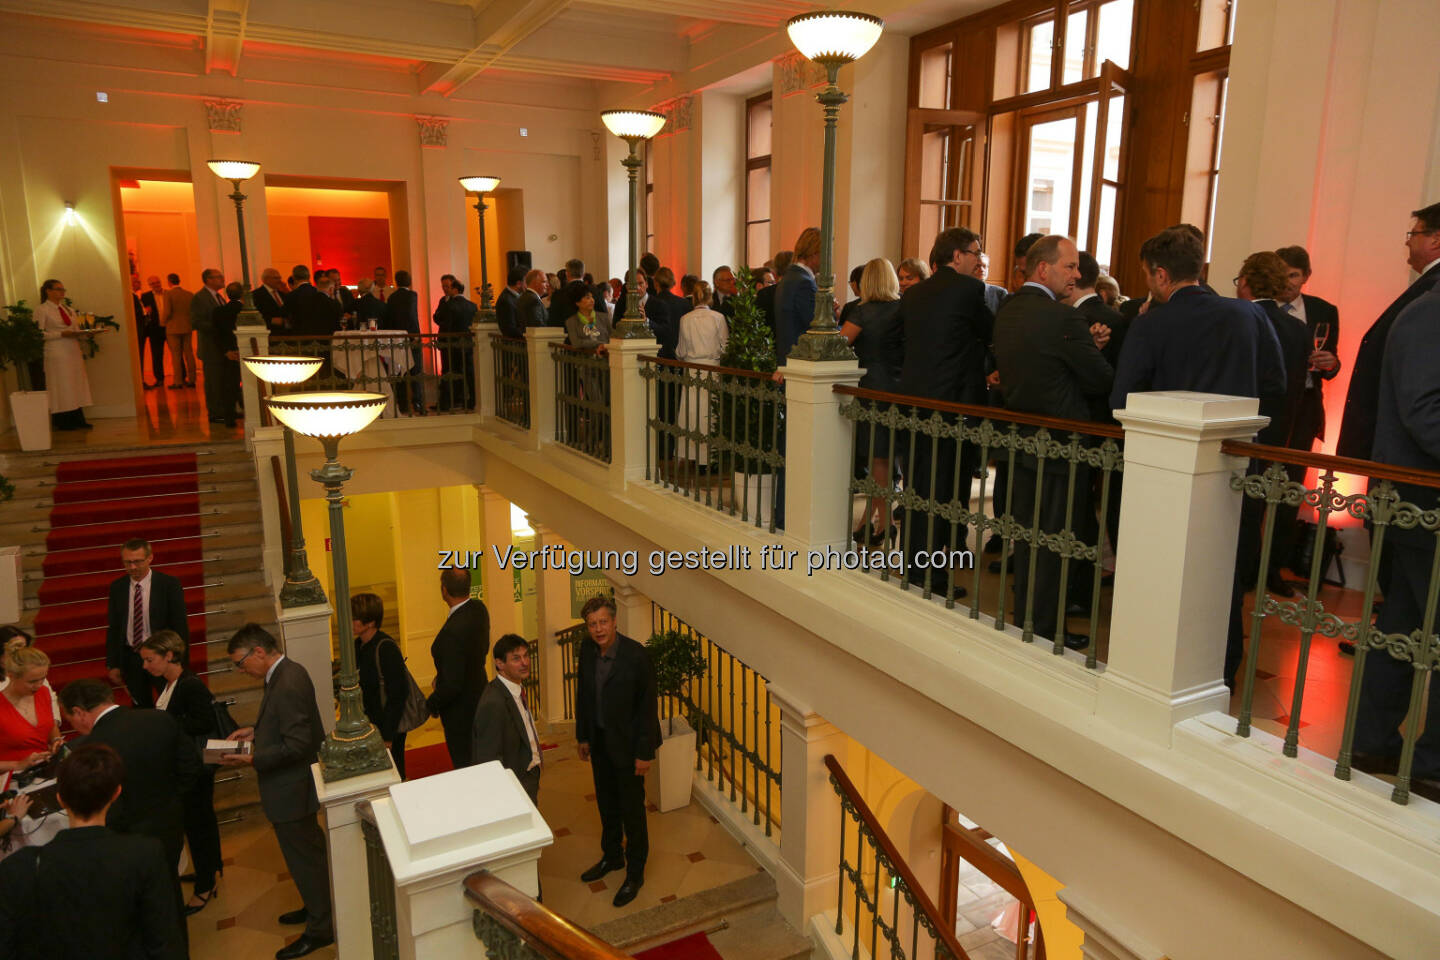 Wiener Börse Preis 2016 im Palais Niederösterreich (Bild: Wiener Börse, Richard Tanzer)